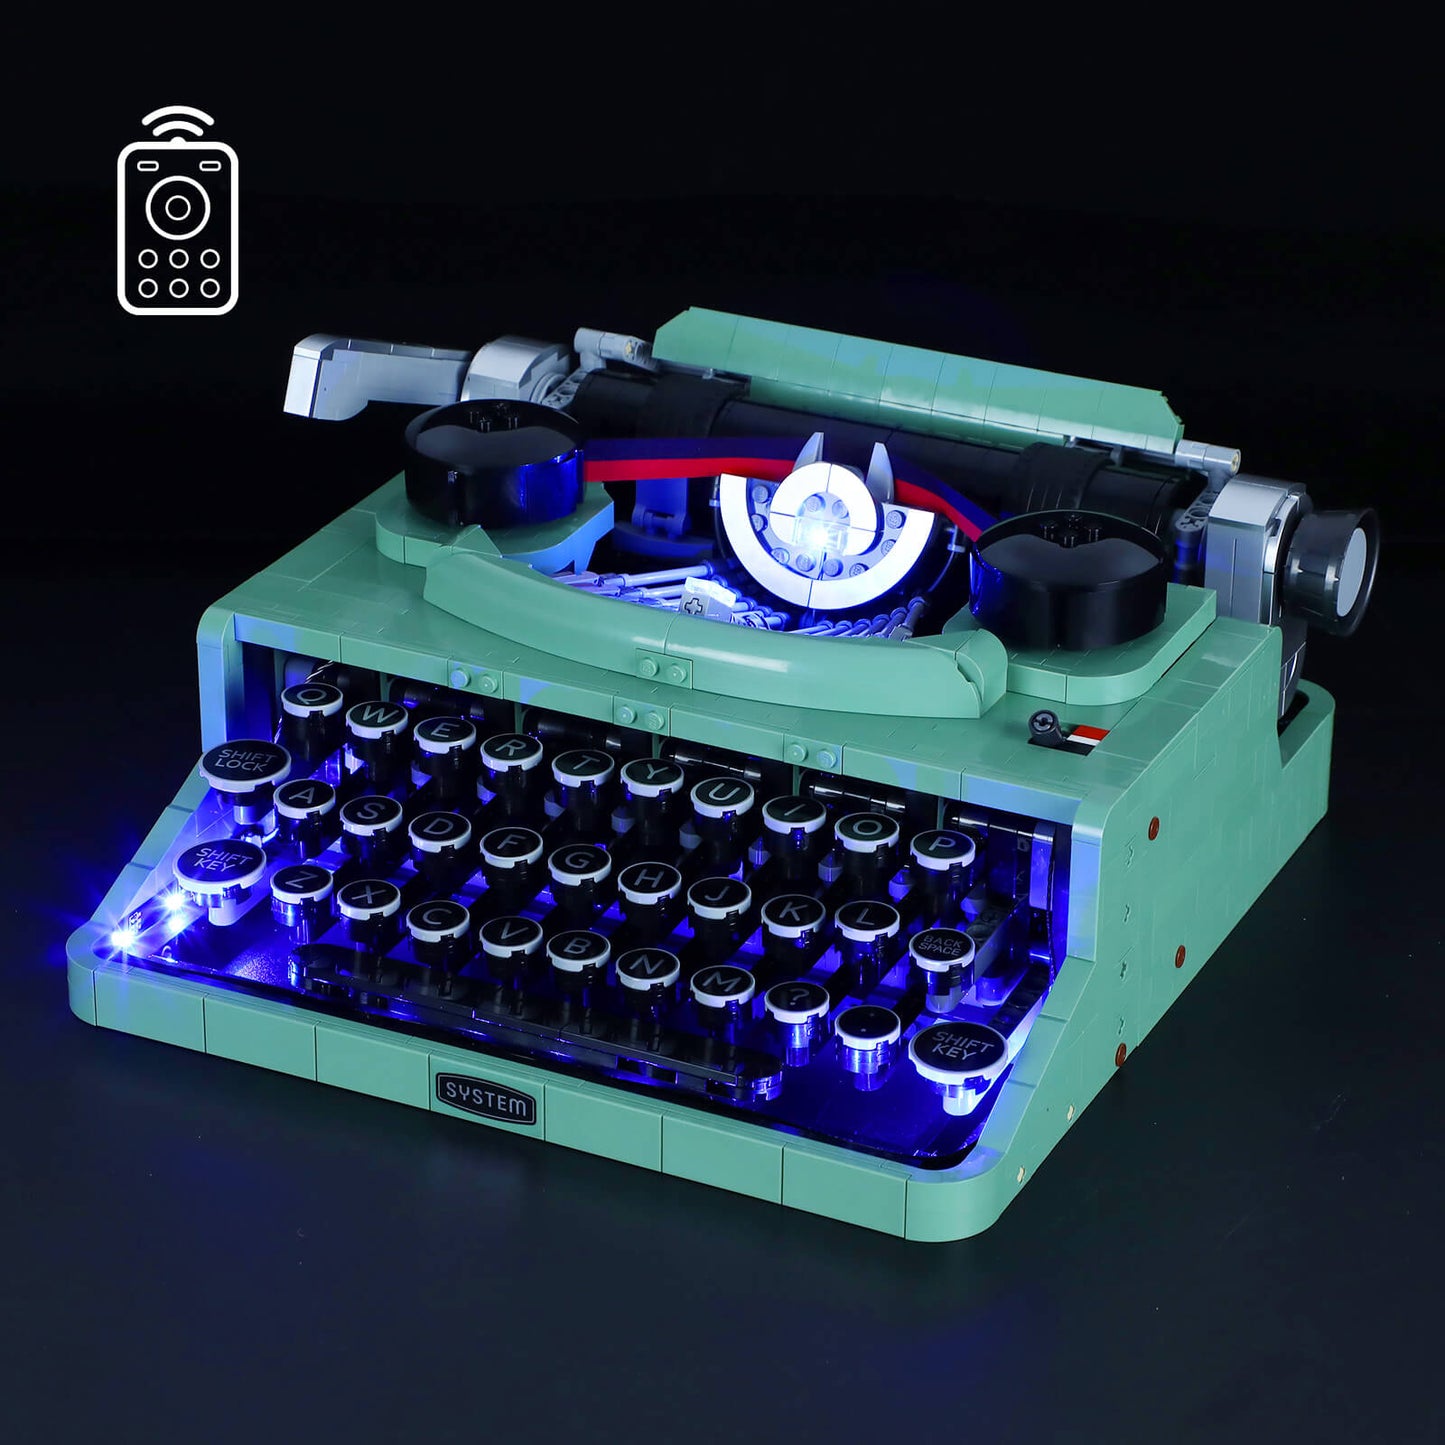 lego ideas typewriter set 21327 moc